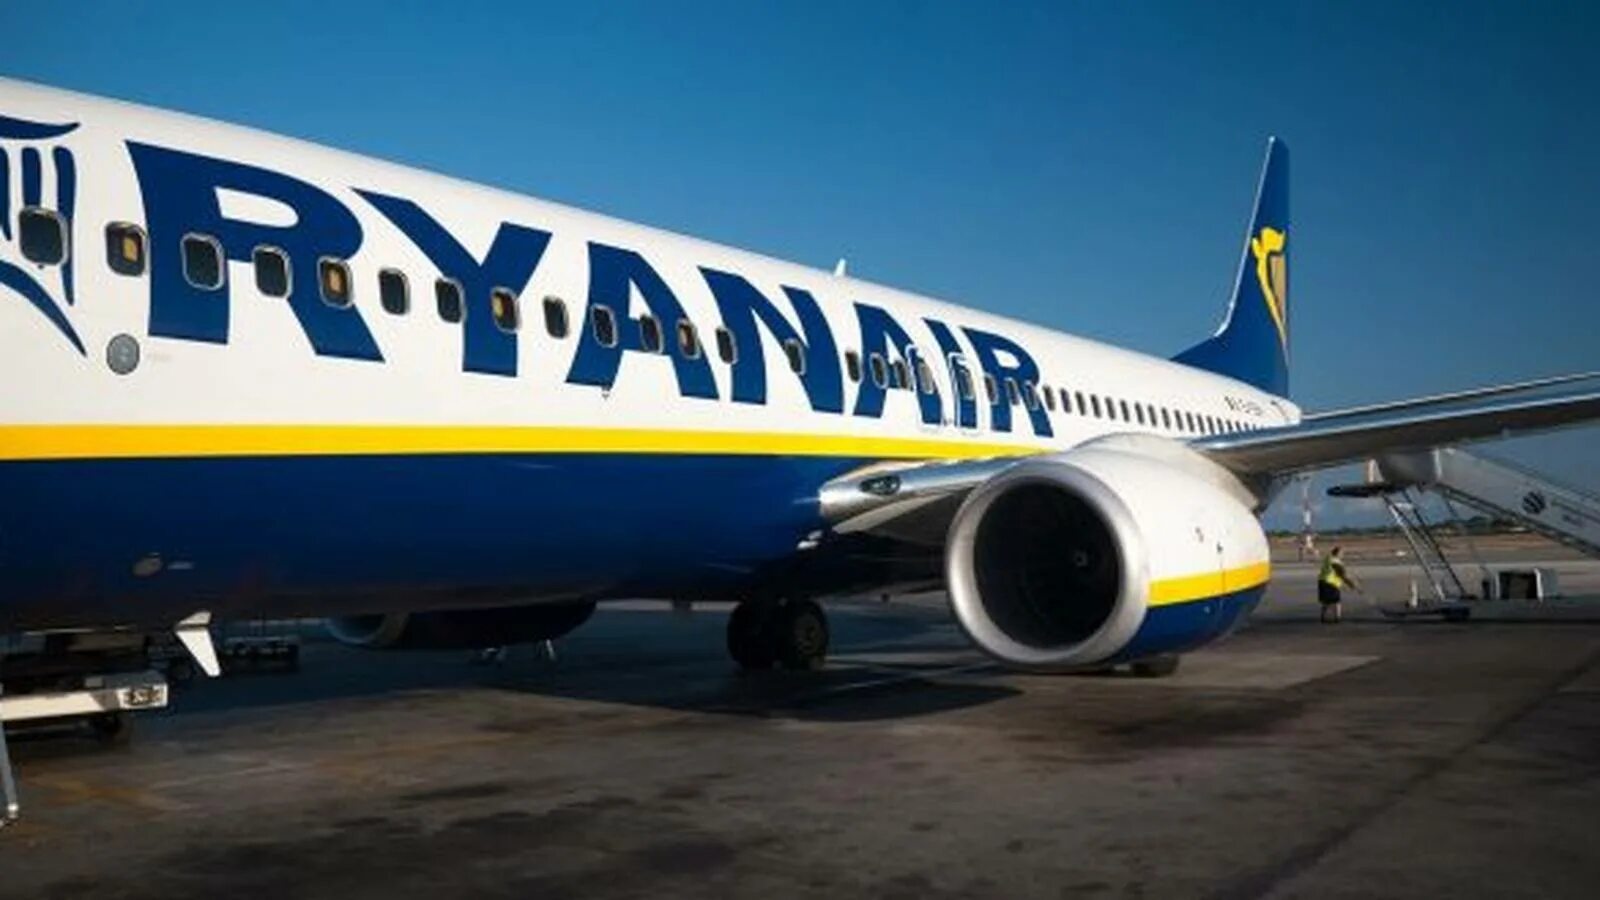 Рианэйр. Ryanair uk. Румынские лоукостеры. Ирландские авиалинии.